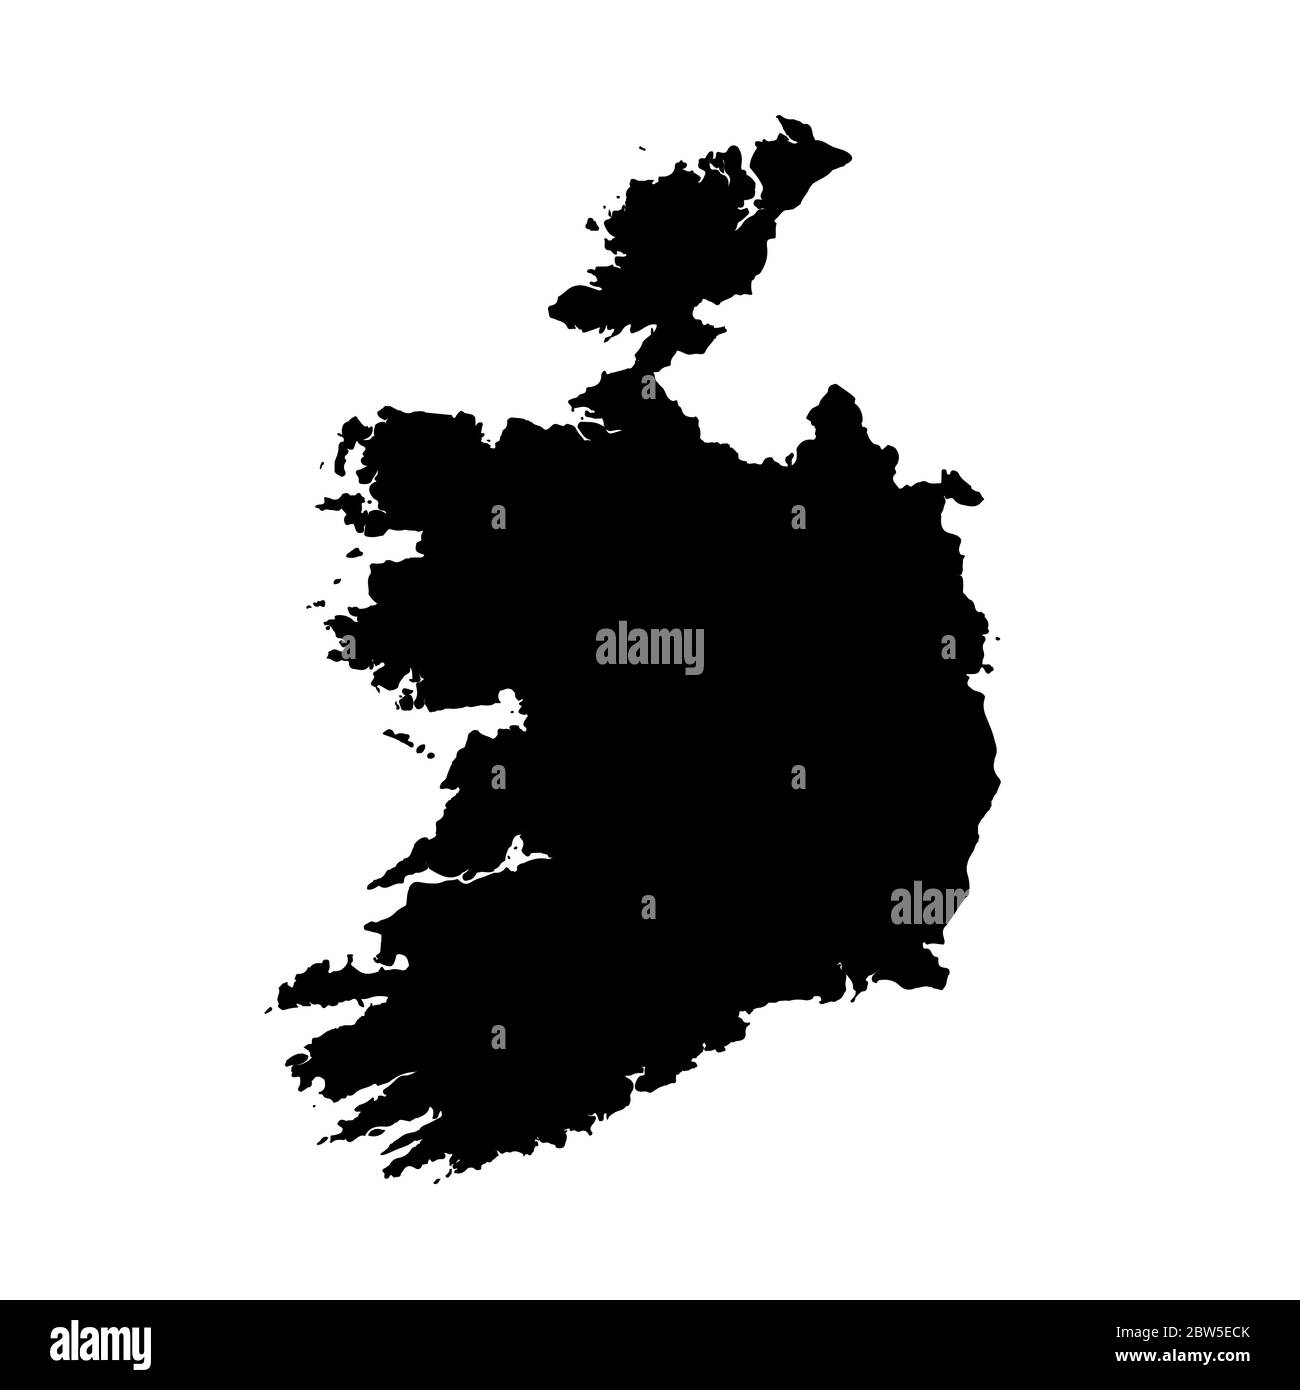 Vektorkarte Irland. Isolierte Vektorgrafik. Schwarz auf weißem Hintergrund. EPS 10-Abbildung. Stock Vektor